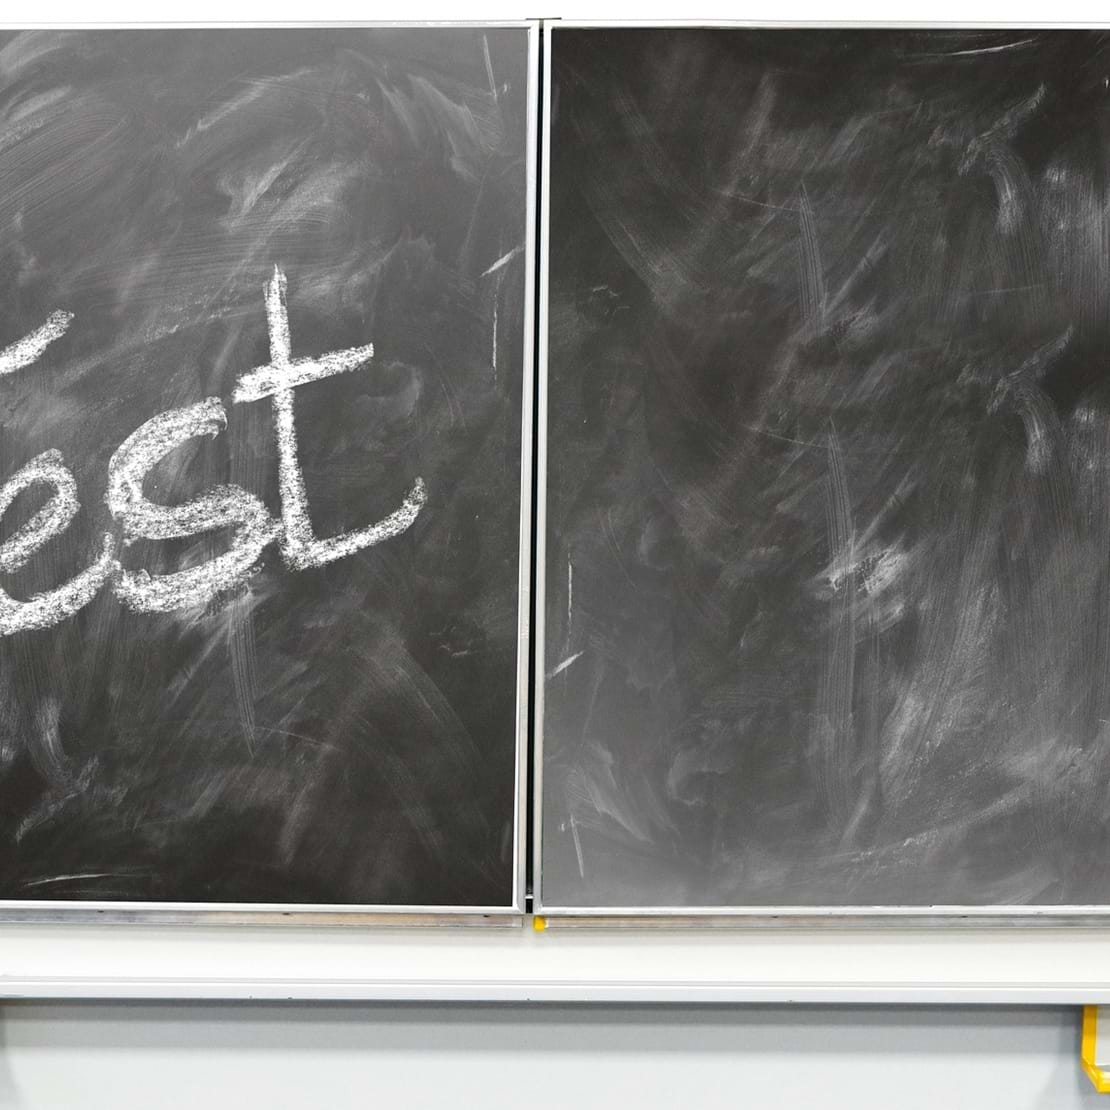 Skoletavle med ordet 'Test' skrevet med kridt